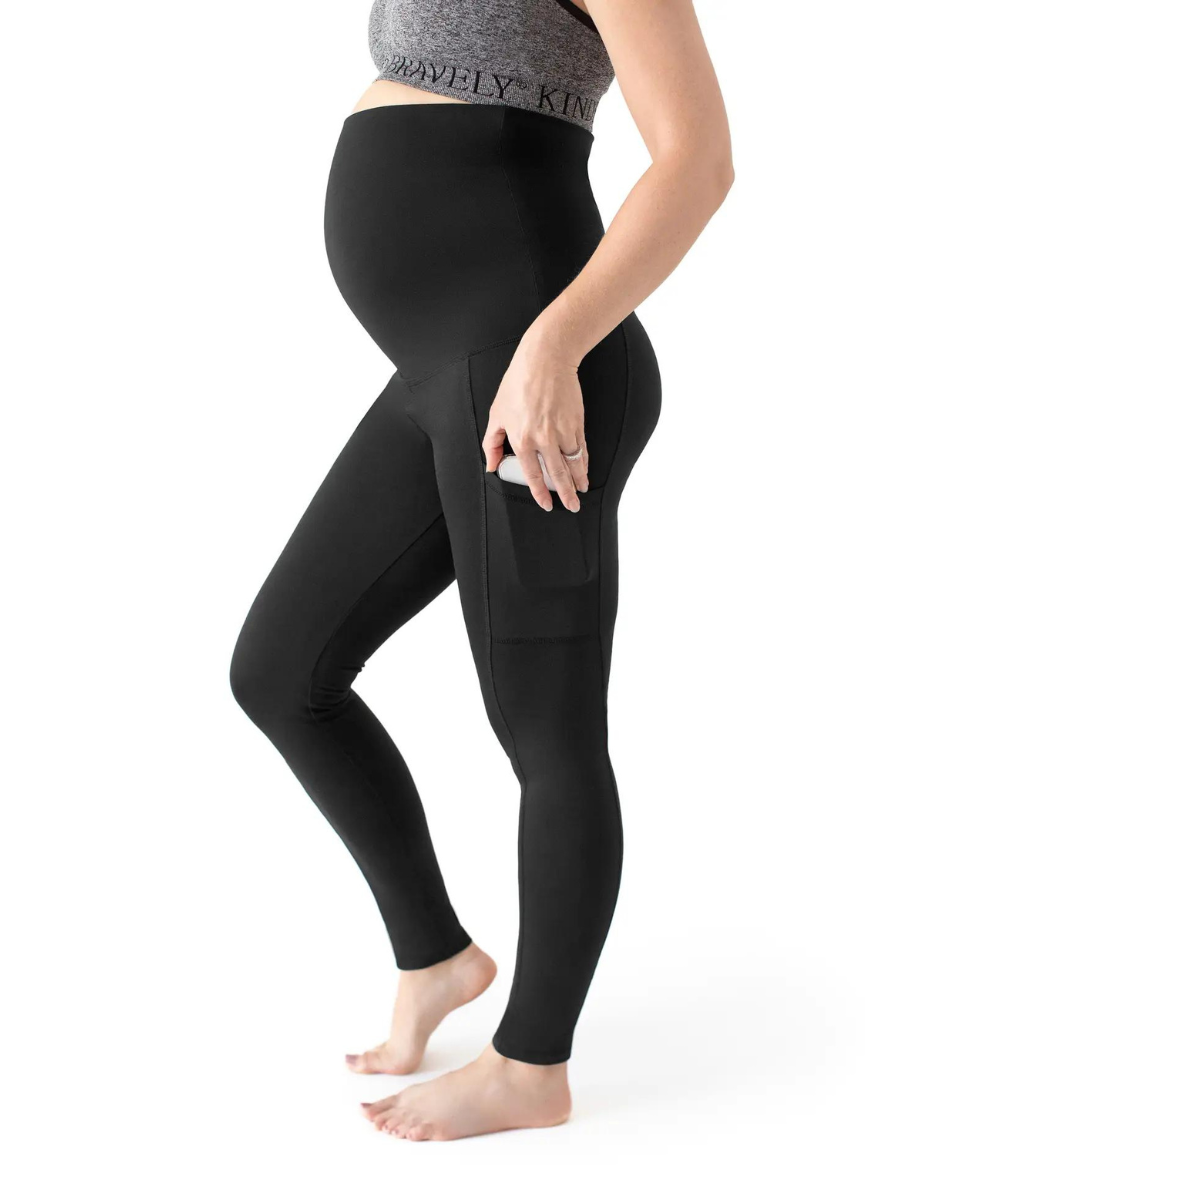 Kindred Bravely: Maternity & Postpartum Support Leggings - Nest